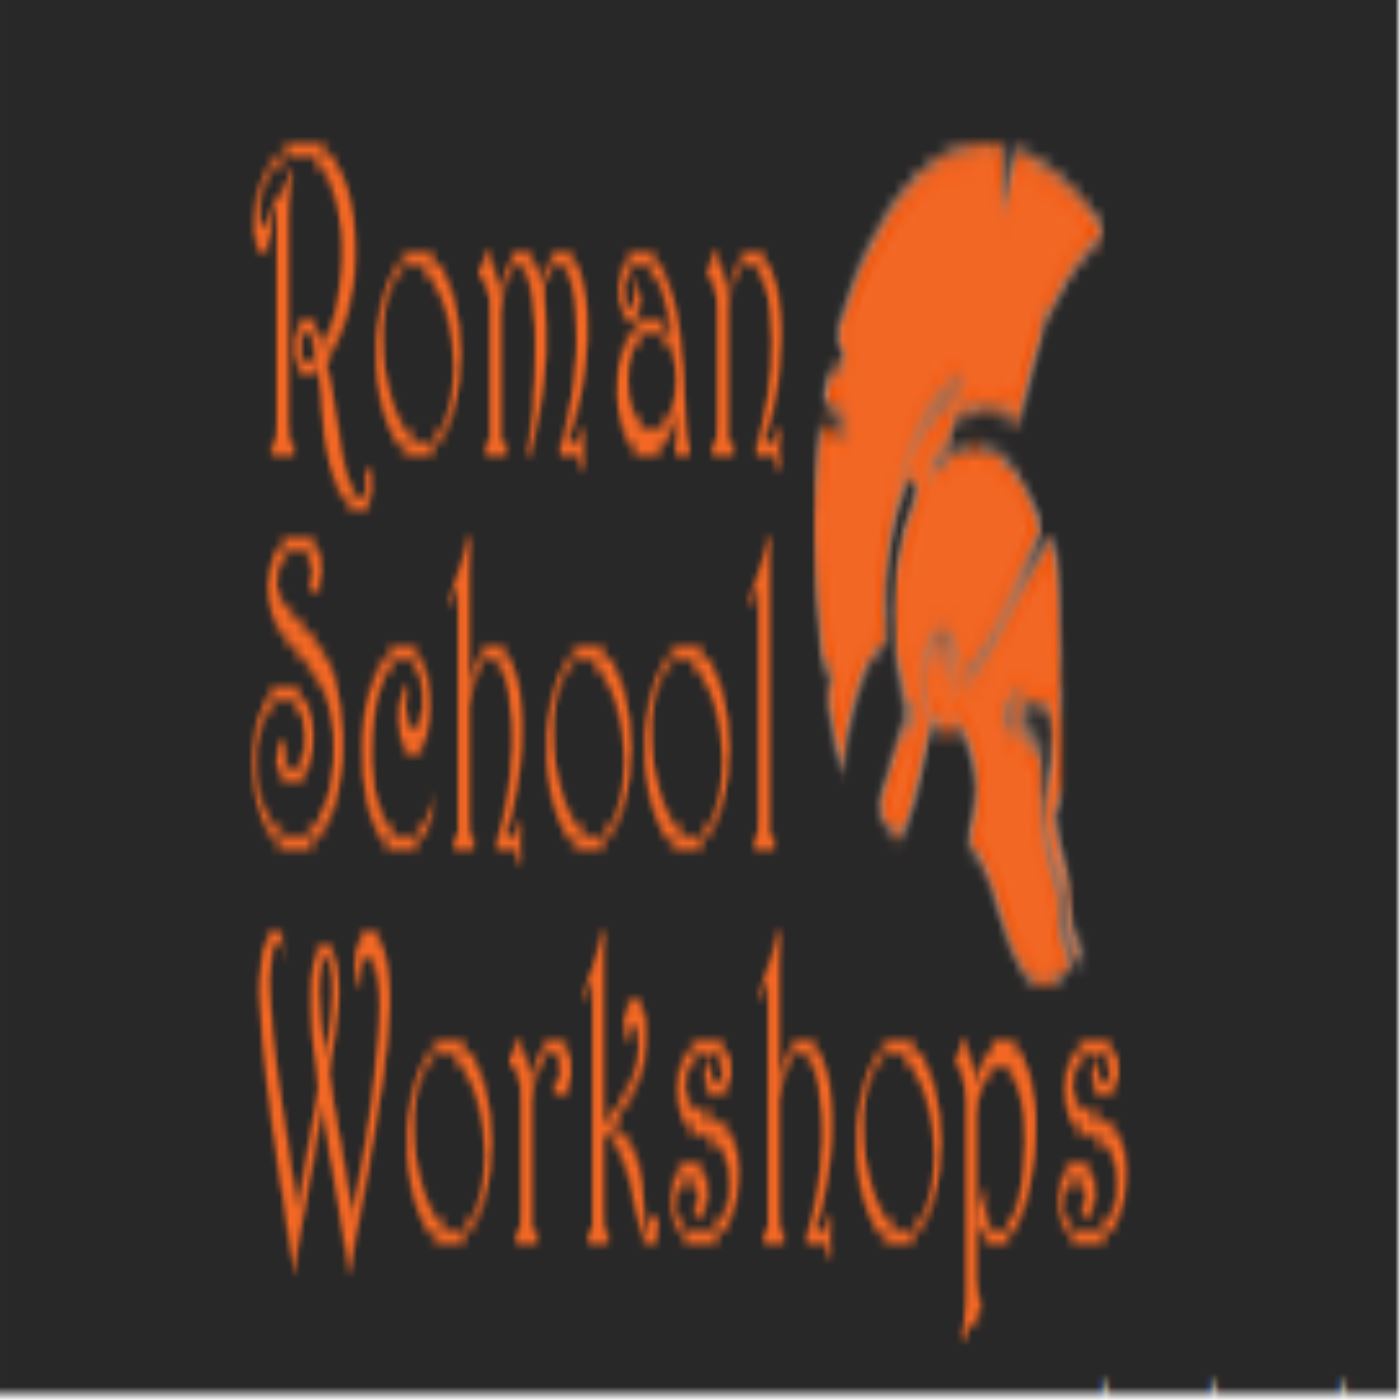 Roman School Workshops